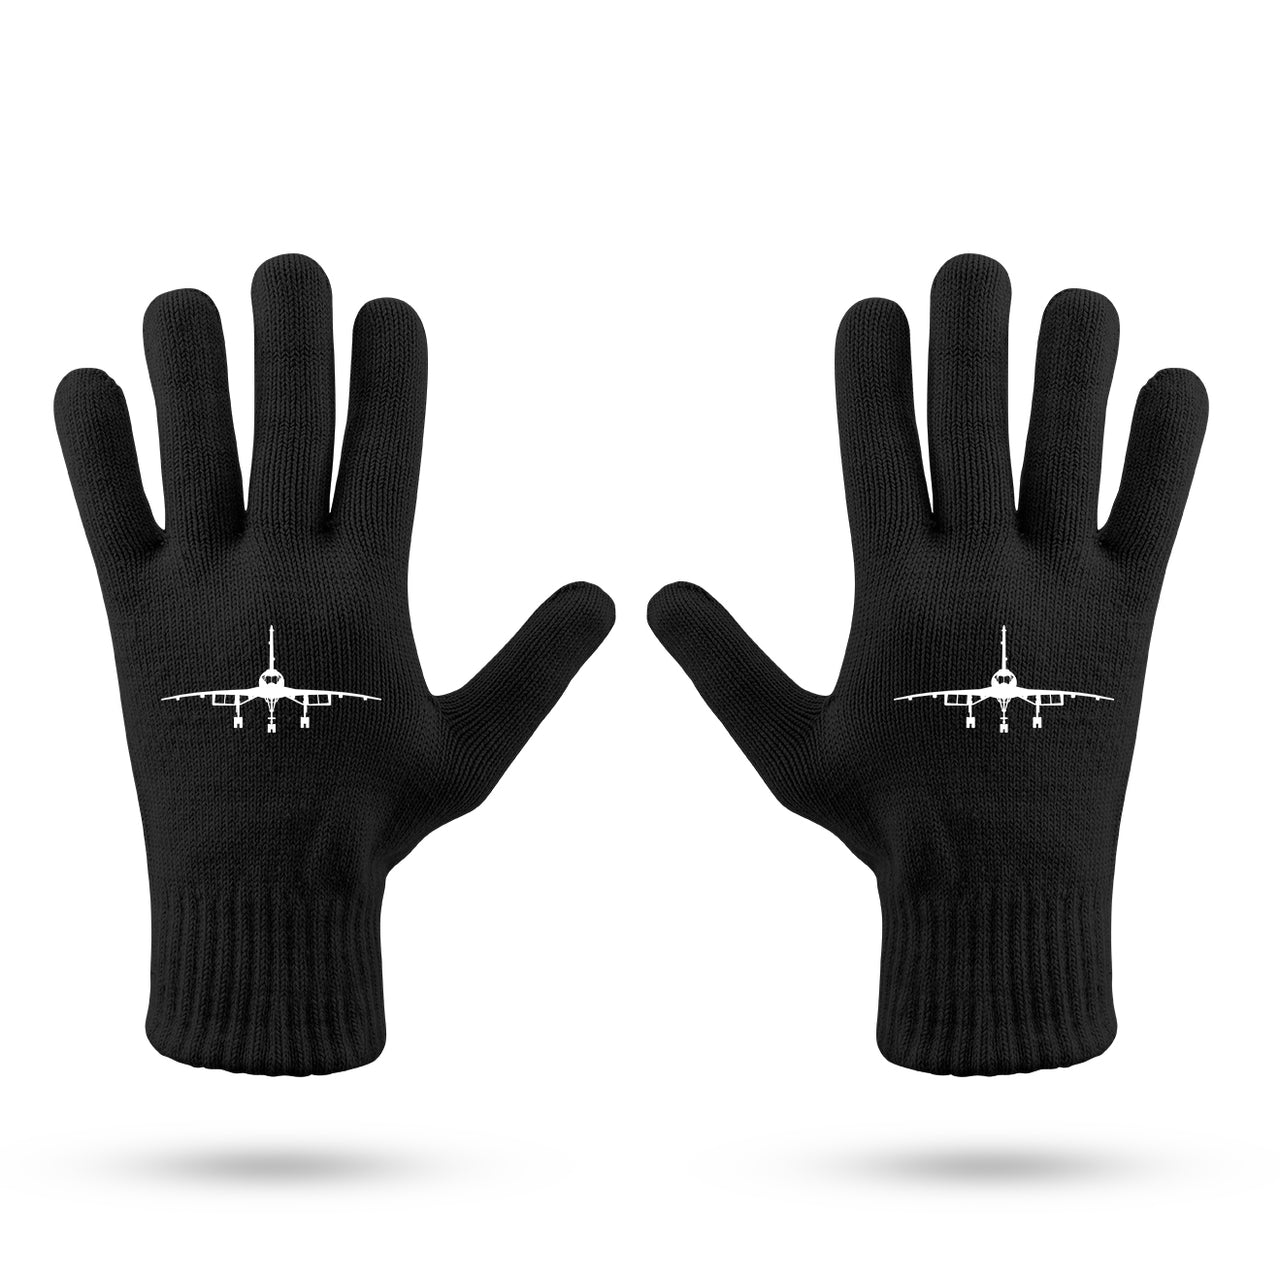 Concorde Silhouette Designed Gloves